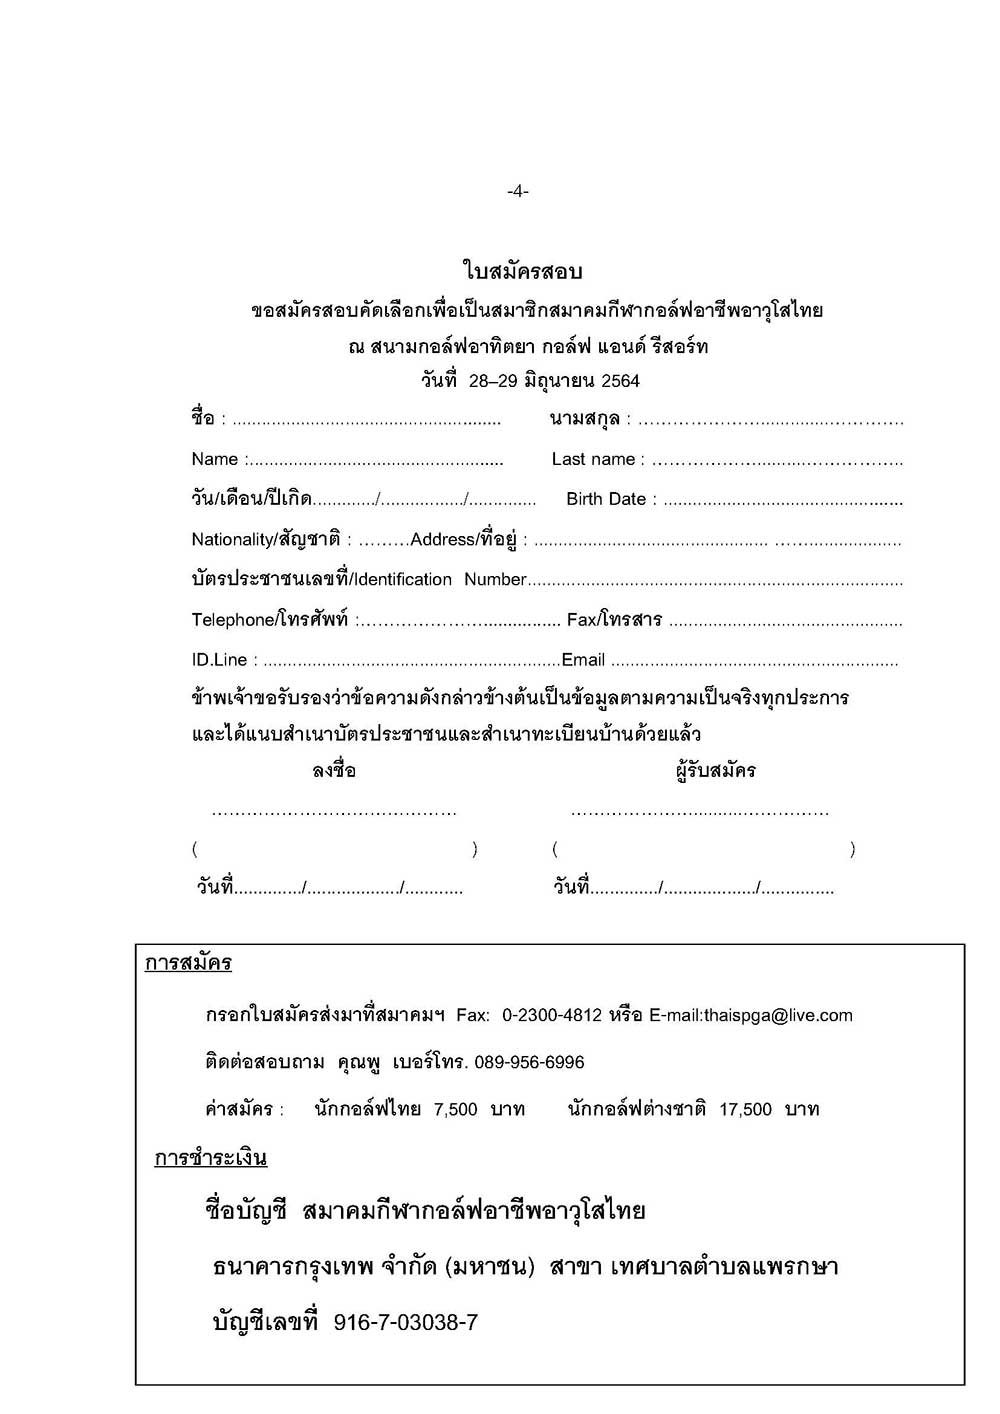 หนงสอสอบเปนภาษาไทย อาทตยา Page 4